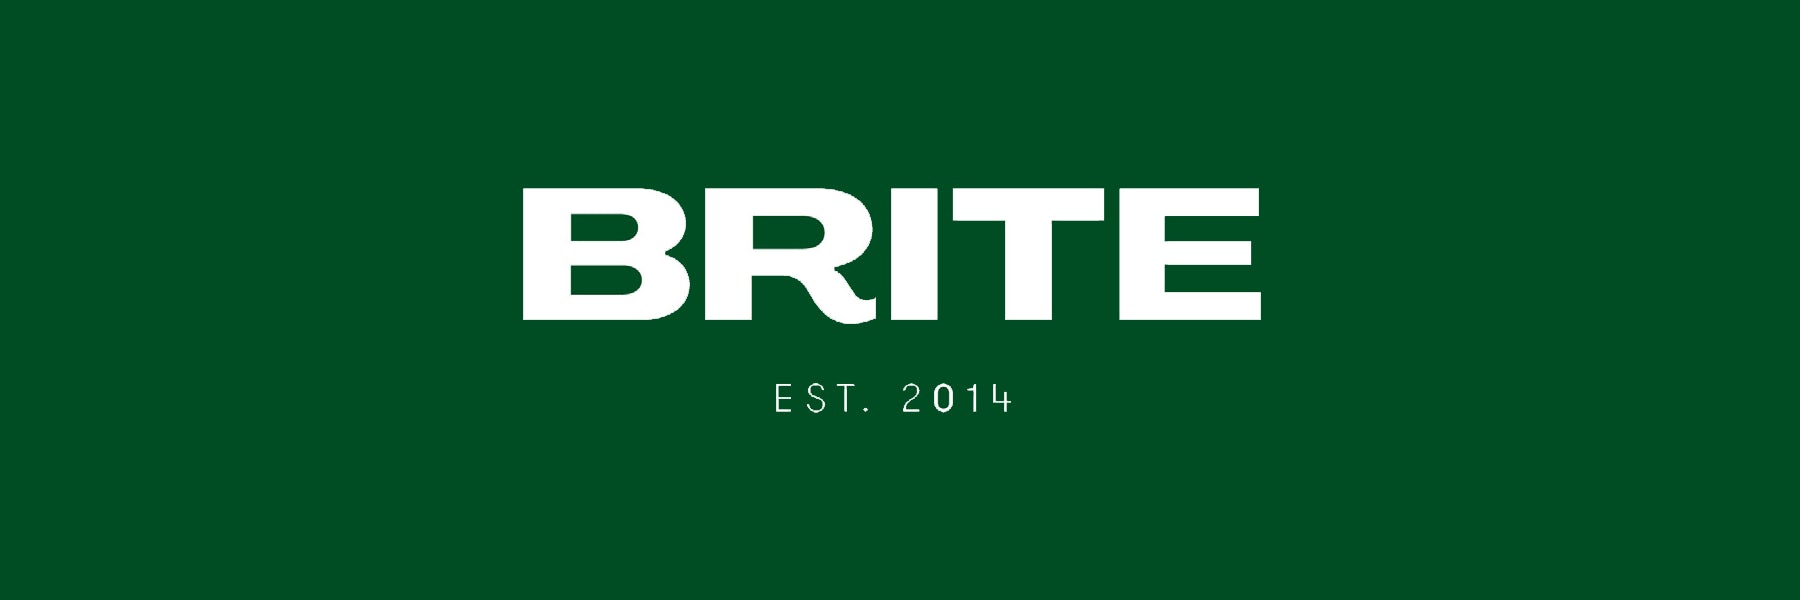 Brite Labs banner